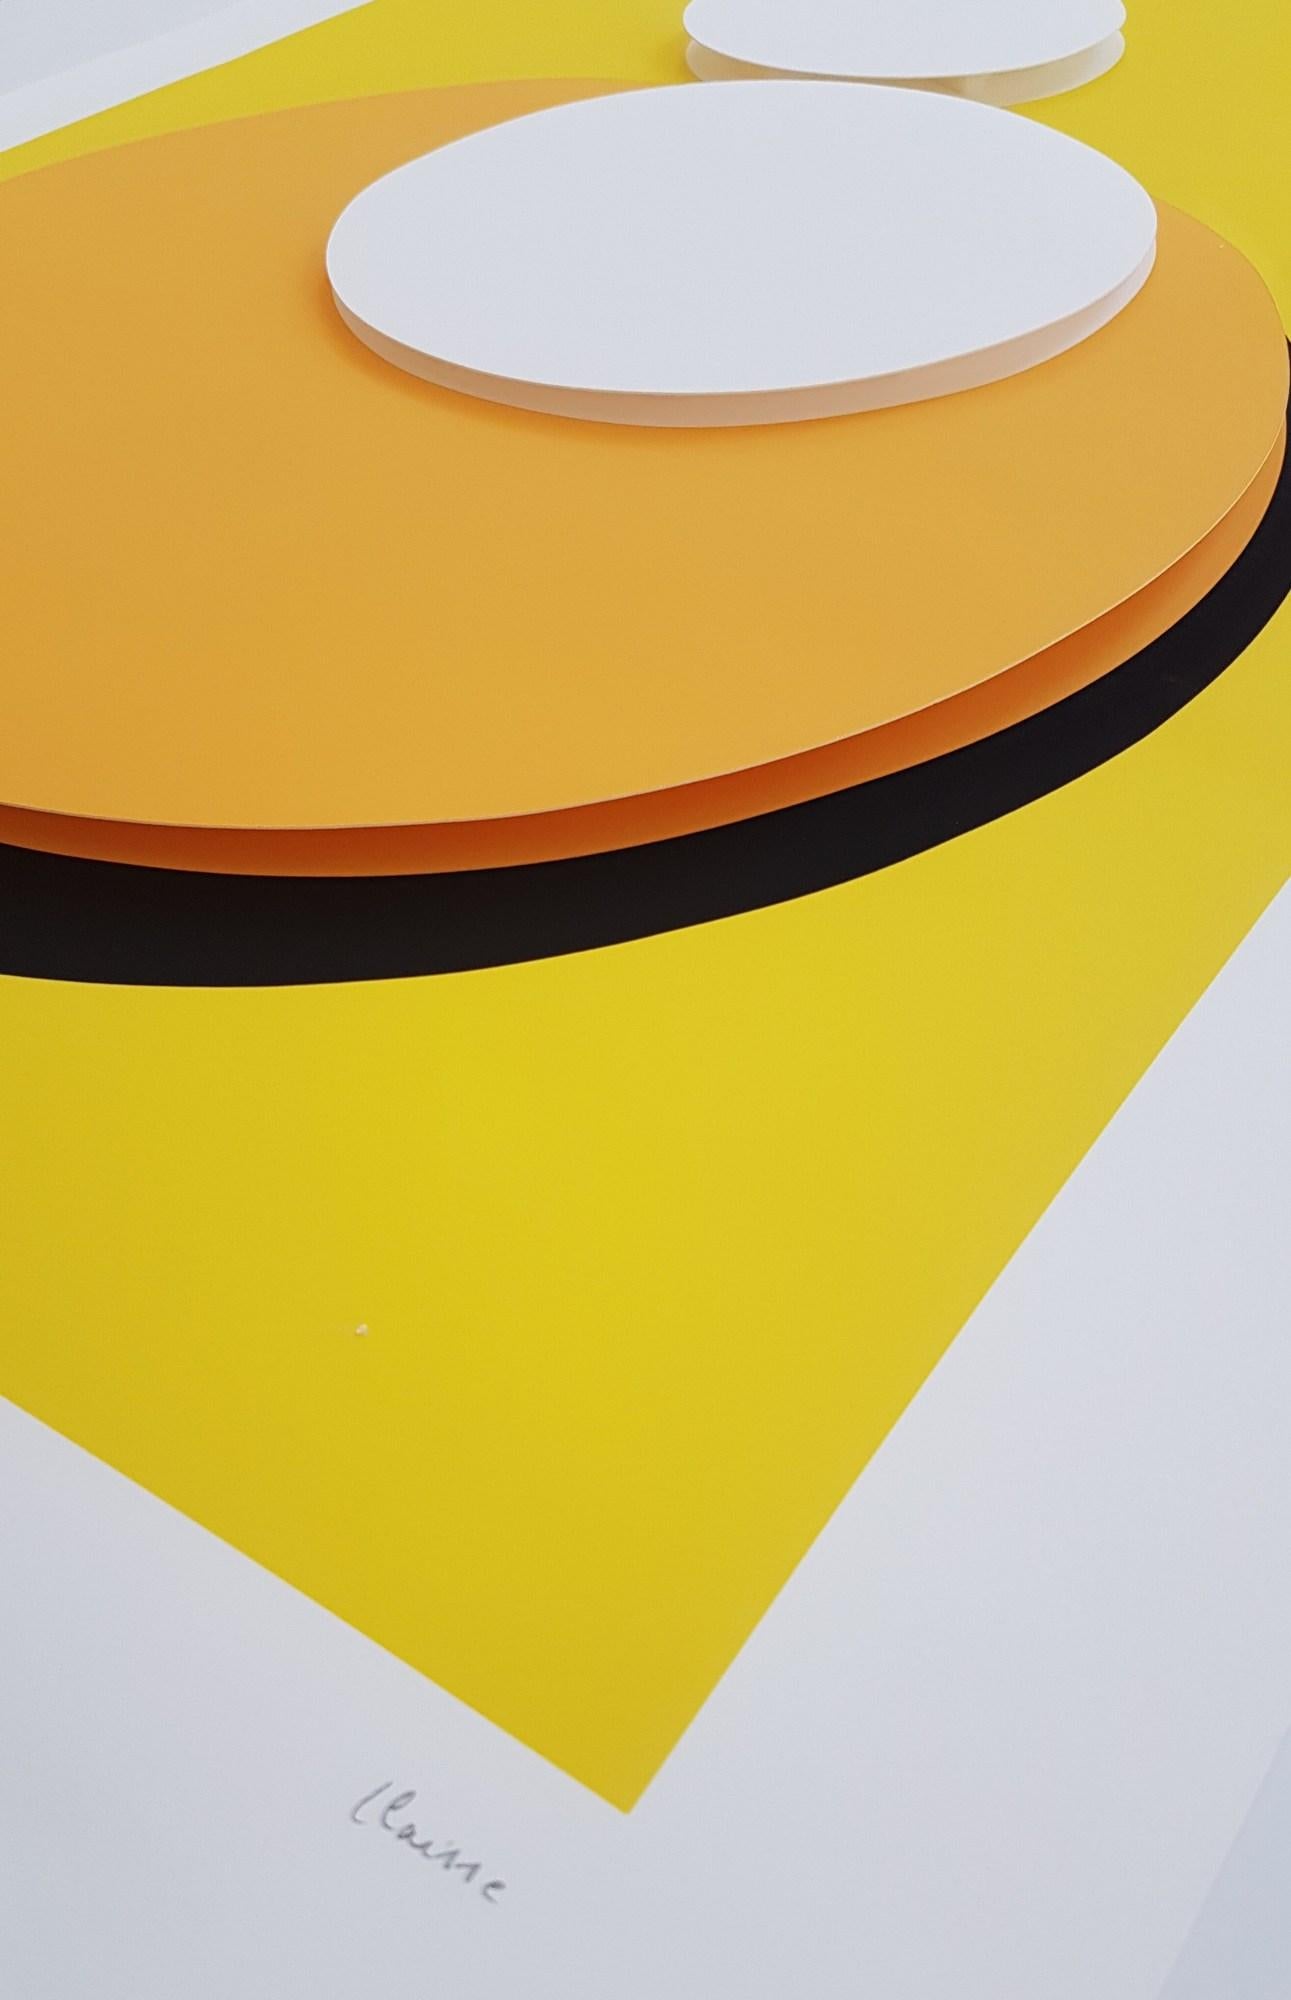 Yellow Unit (Unité Jaune) - Abstract Print by Geneviève Claisse